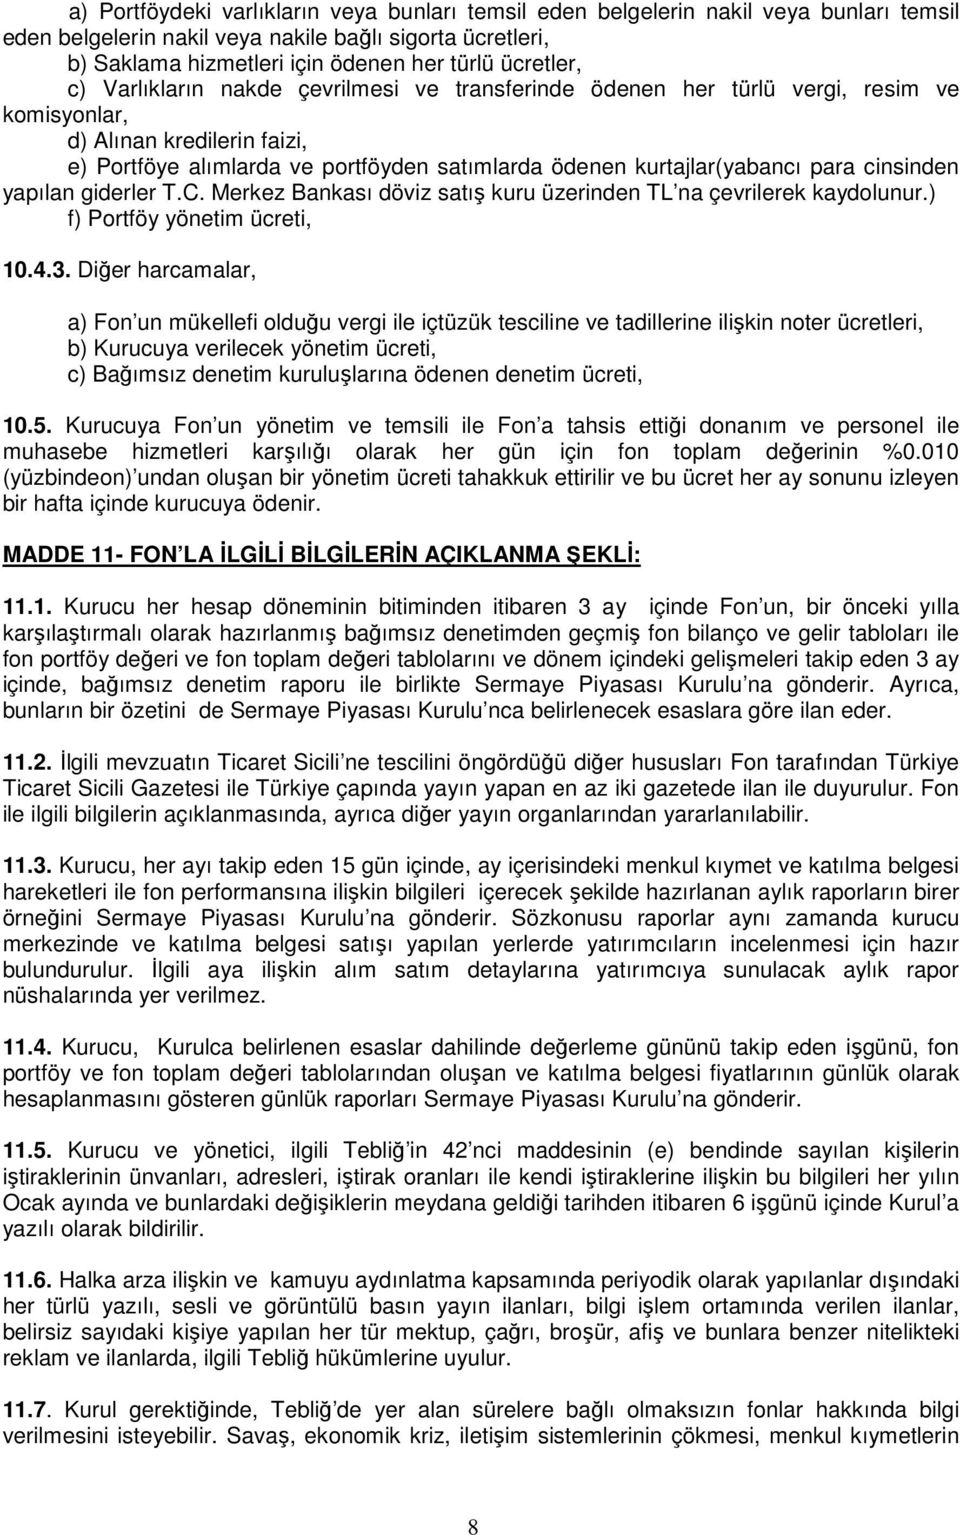 kurtajlar(yabancı para cinsinden yapılan giderler T.C. Merkez Bankası döviz satış kuru üzerinden TL na çevrilerek kaydolunur.) f) Portföy yönetim ücreti, 10.4.3.